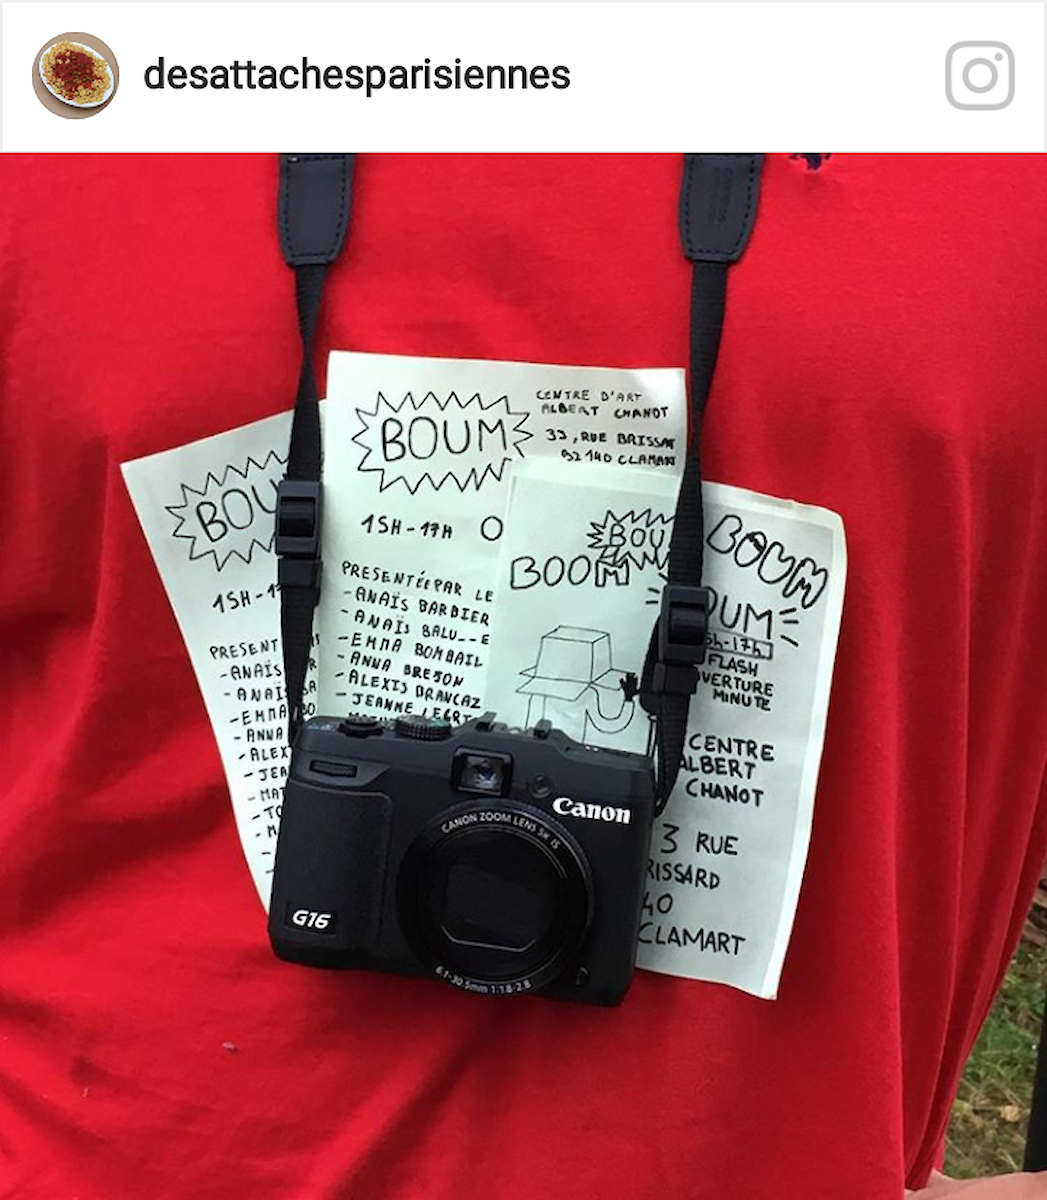 post Instagram des textes et appareil photo, flyer exposition